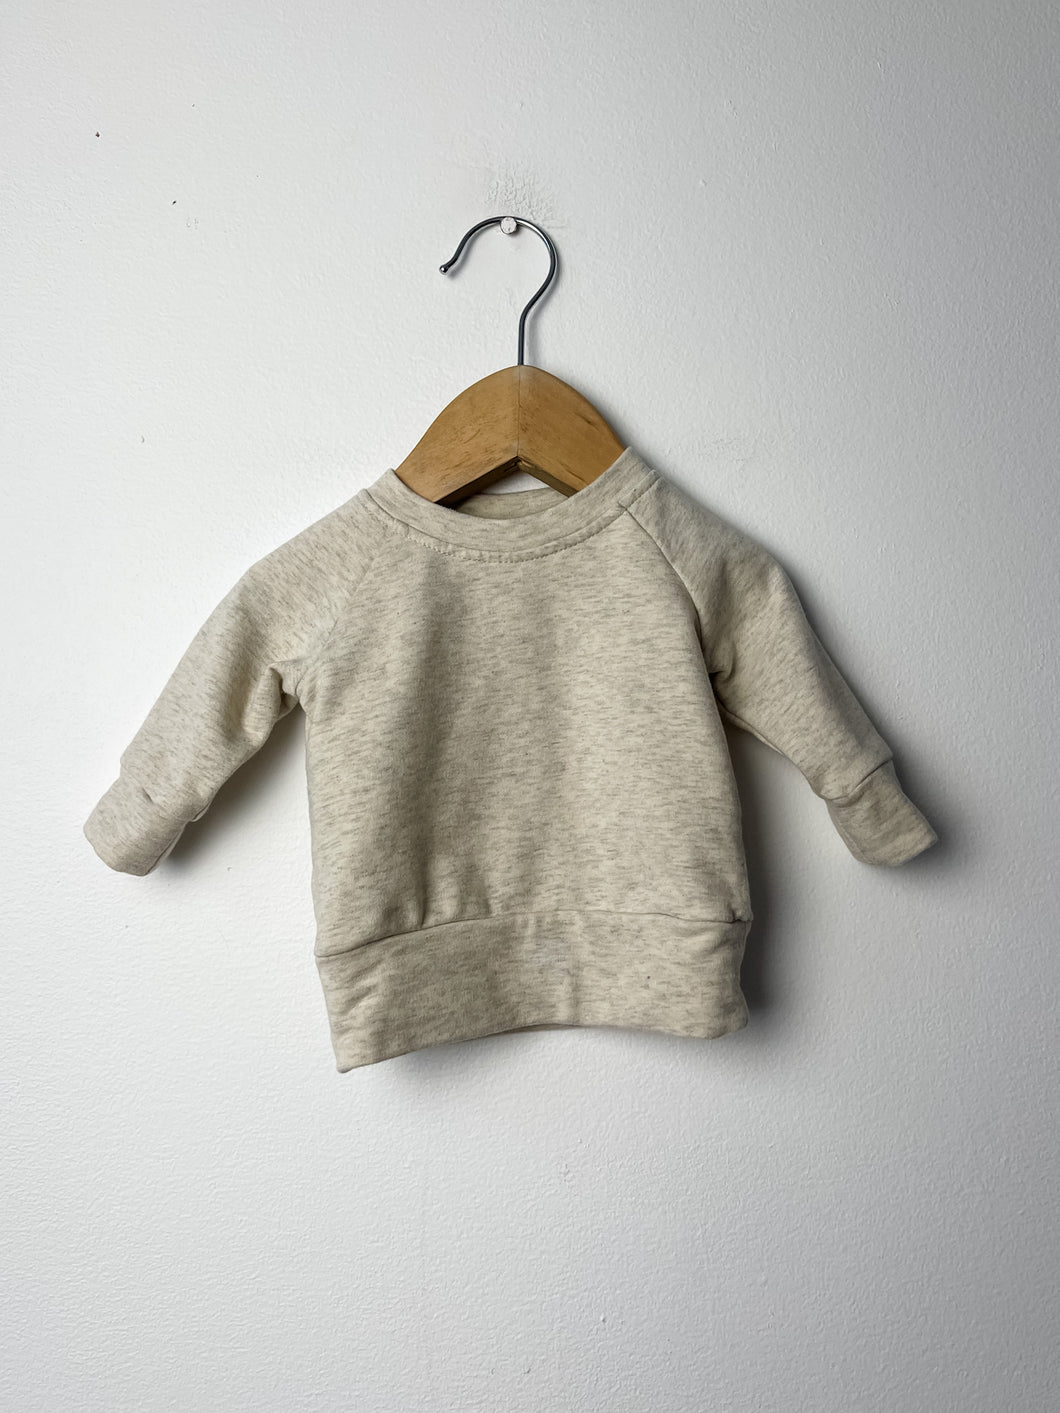 Beige Mebie Baby Sweater Size 0-3 Months